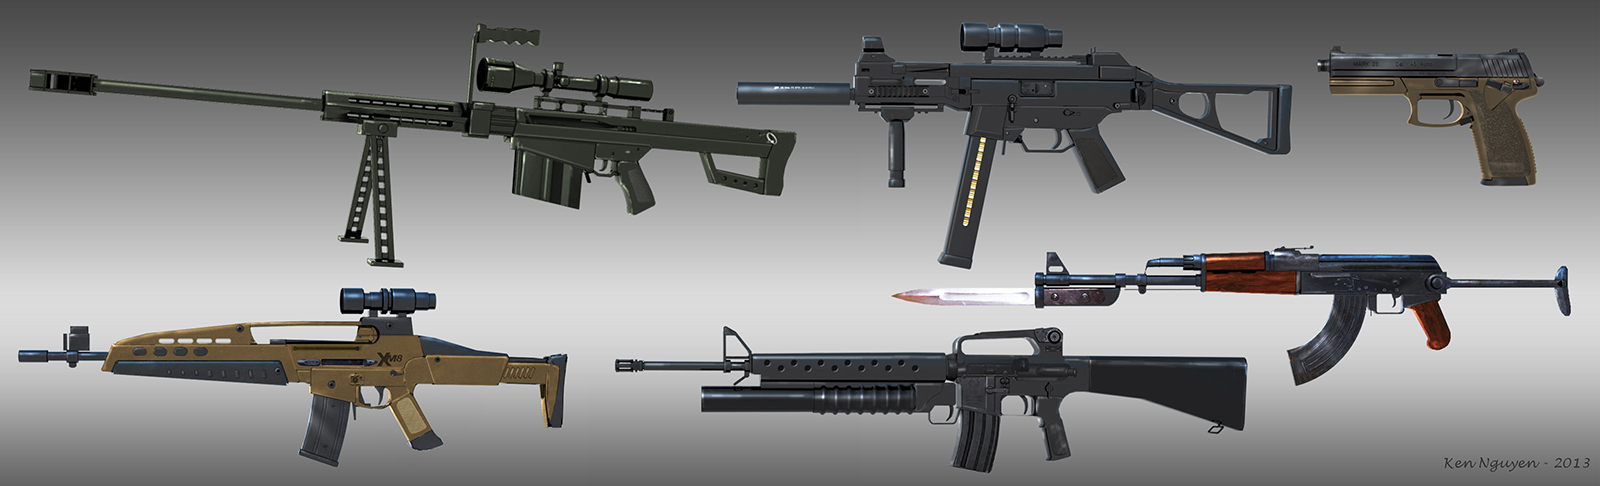 Gun_concepts_02.jpg